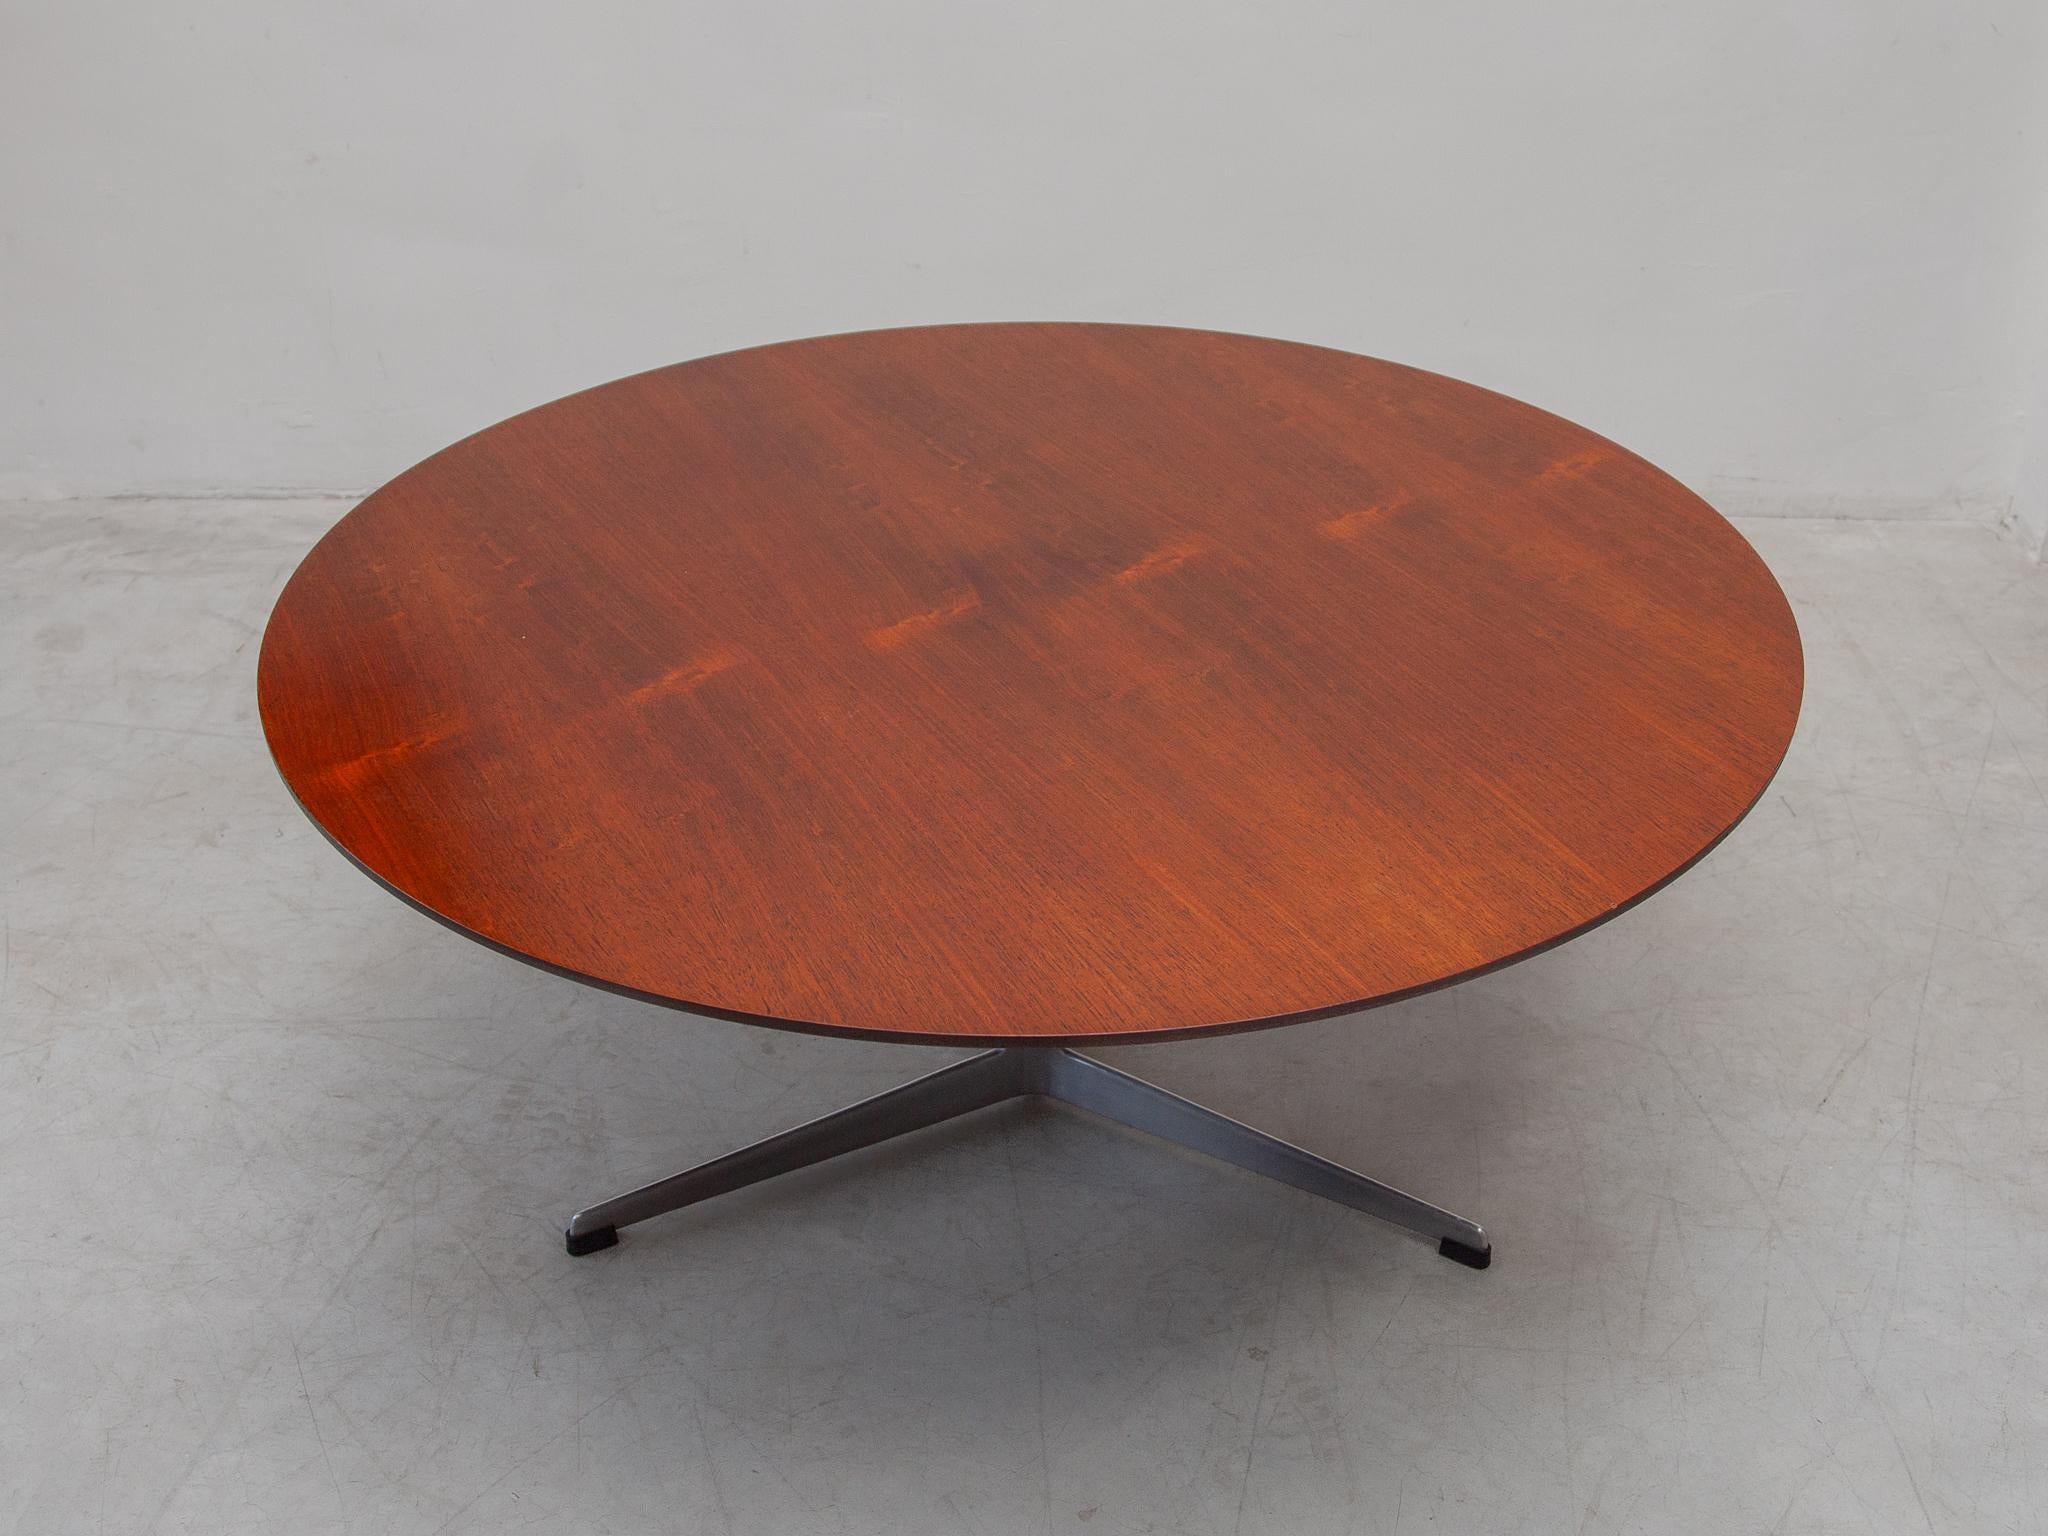 Table basse circulaire. Design/One vers 1968. Base tripode en aluminium, plateau en bois de teck. Dimensions H.47 x L.110 cm. Labellisé 